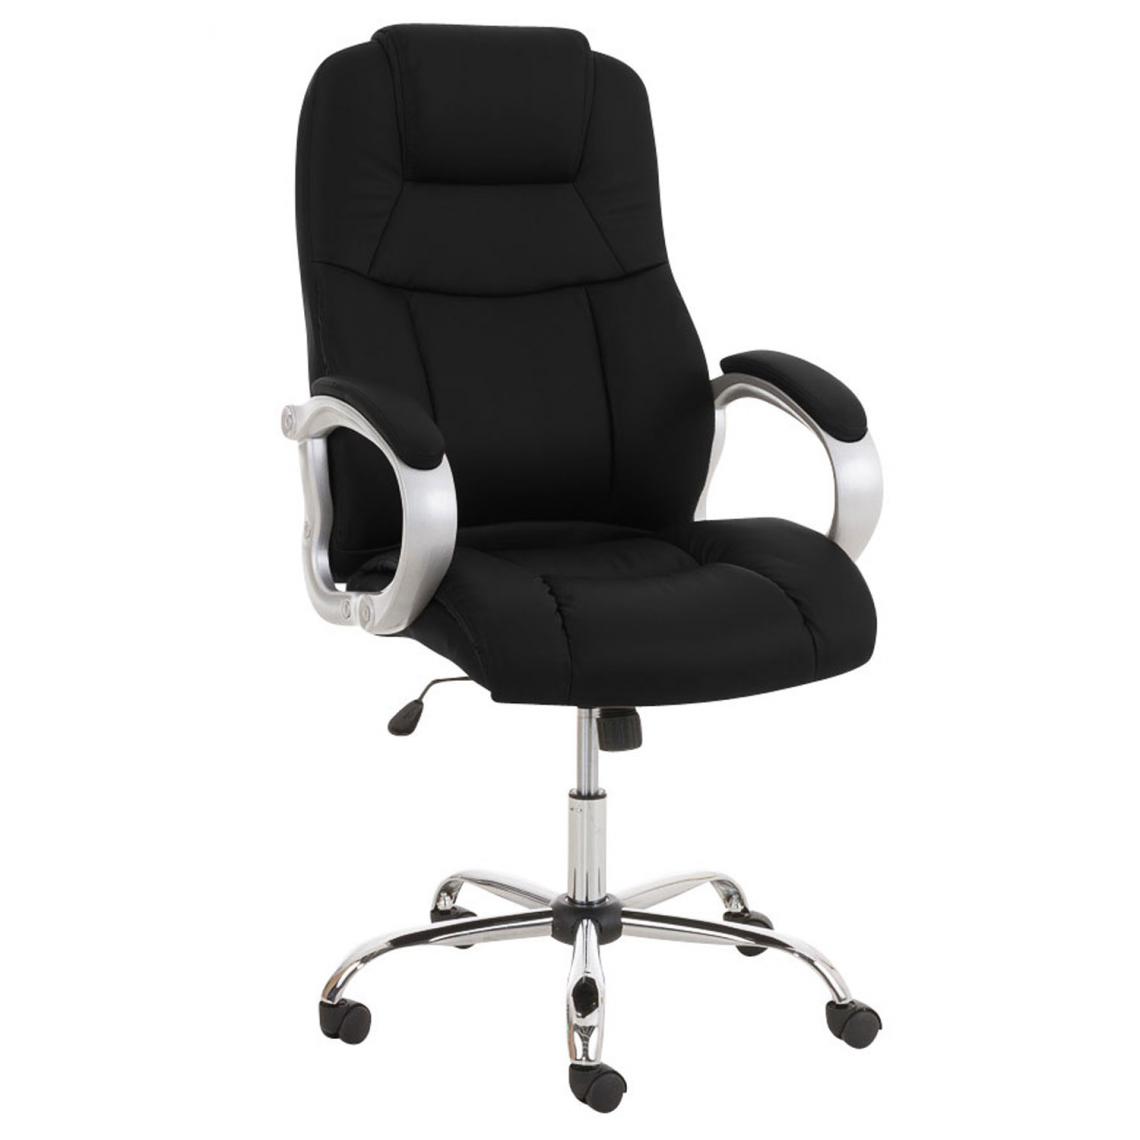 Icaverne - Superbe Chaise de bureau famille Budapest Apoll couleur noir - Chaises